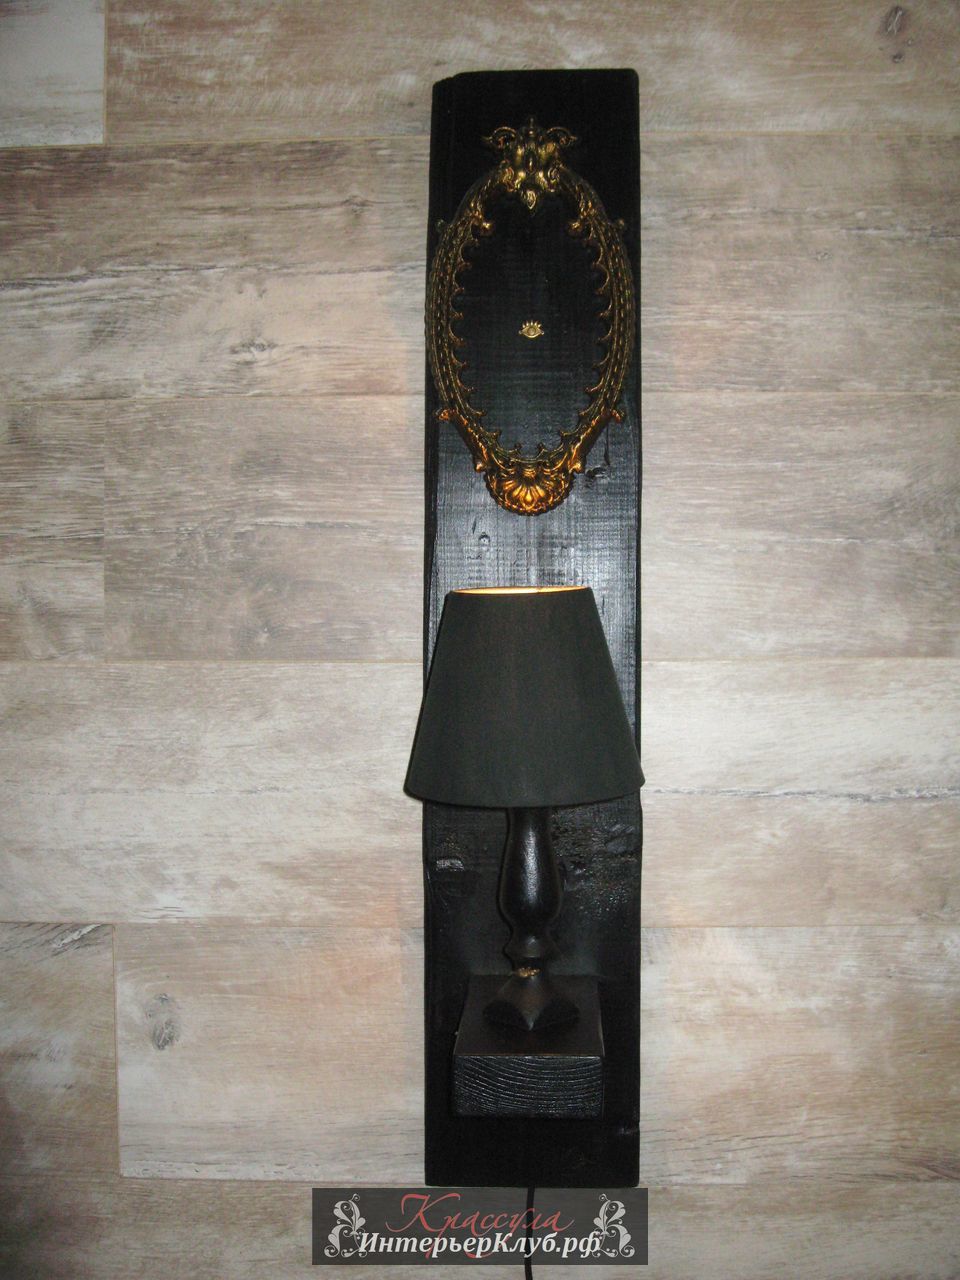 100 Светильник Око - амбарная доска, с элементами декора, цвет черный - золото. Эксклюзивные светильники ручной работы